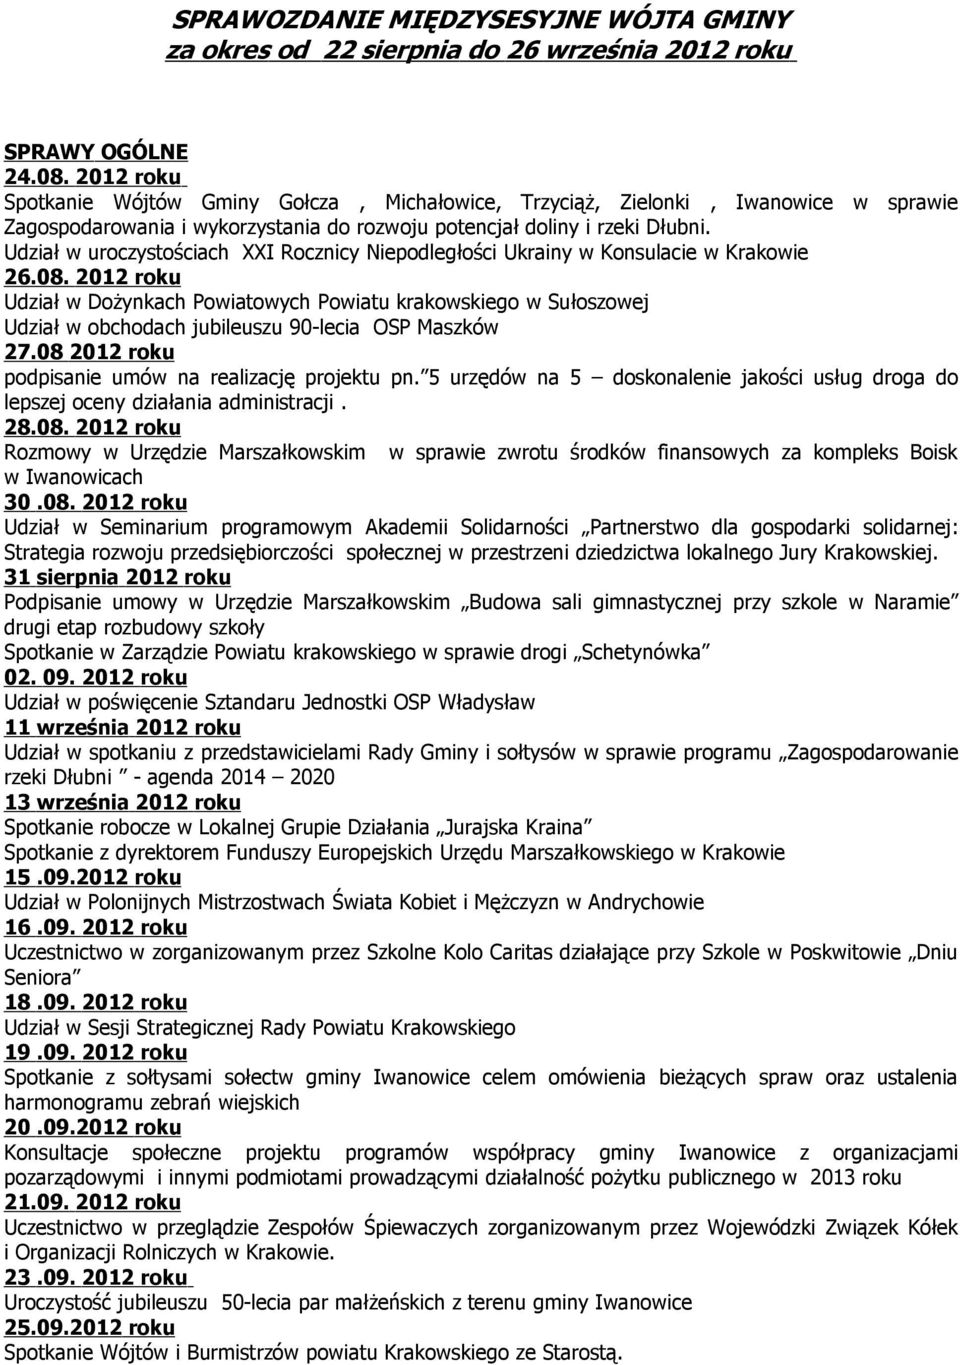 Udział w uroczystościach XXI Rocznicy Niepodległości Ukrainy w Konsulacie w Krakowie 26.08.